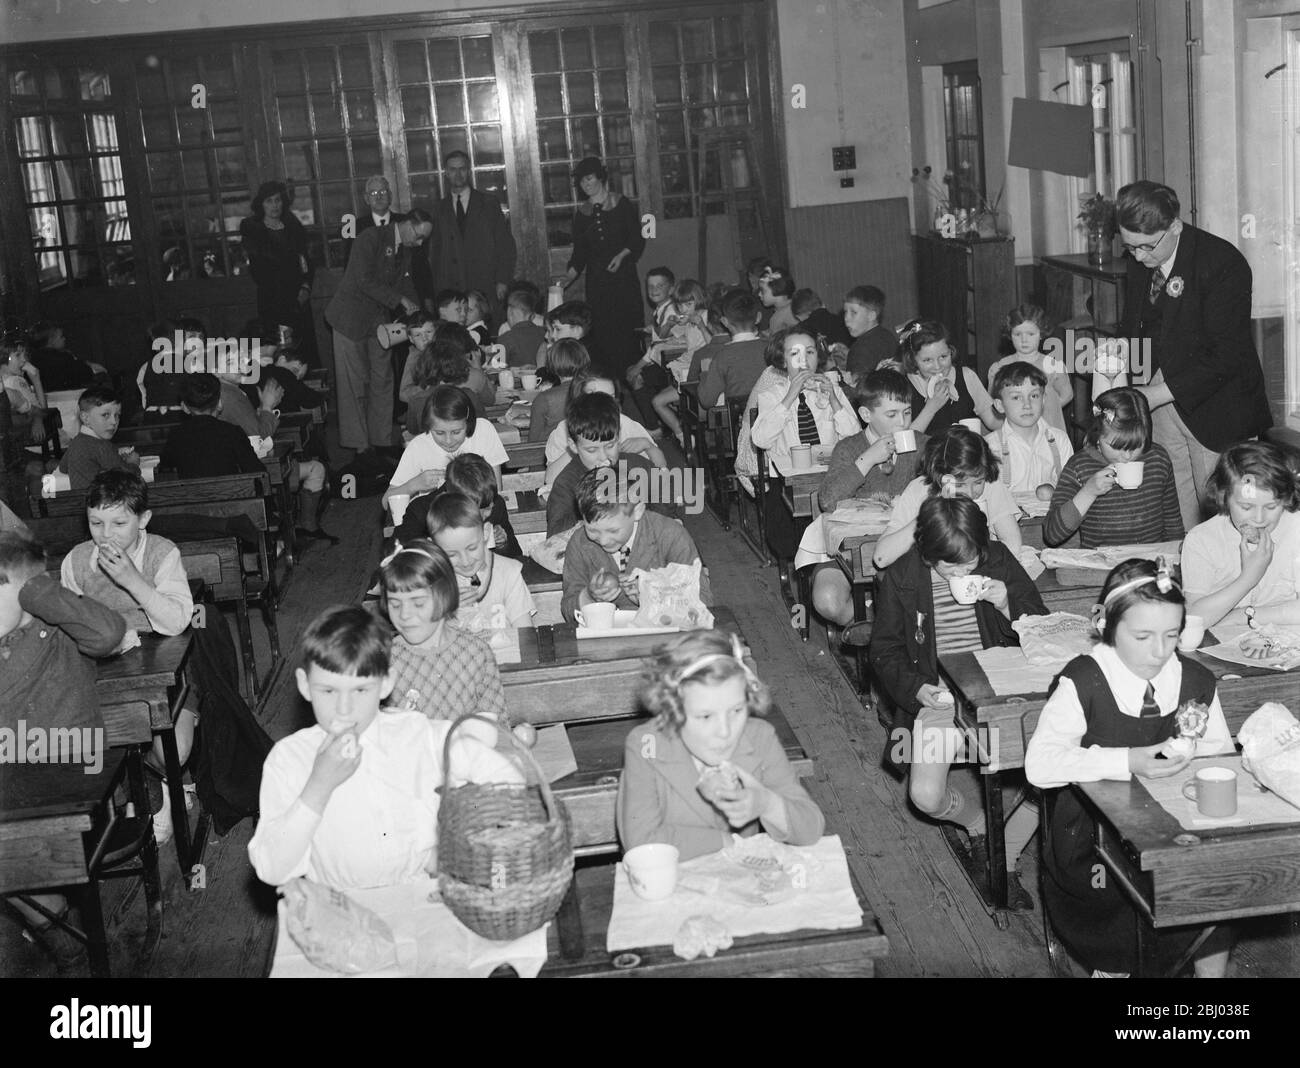 Krönungsschultee an einer Schule in Crayford, Kent, um die Krönung von König George VI zu feiern. Kinder trinken aus den Krönungsbechern, die sie gerade erhalten haben. - 10. Mai 1937 Stockfoto